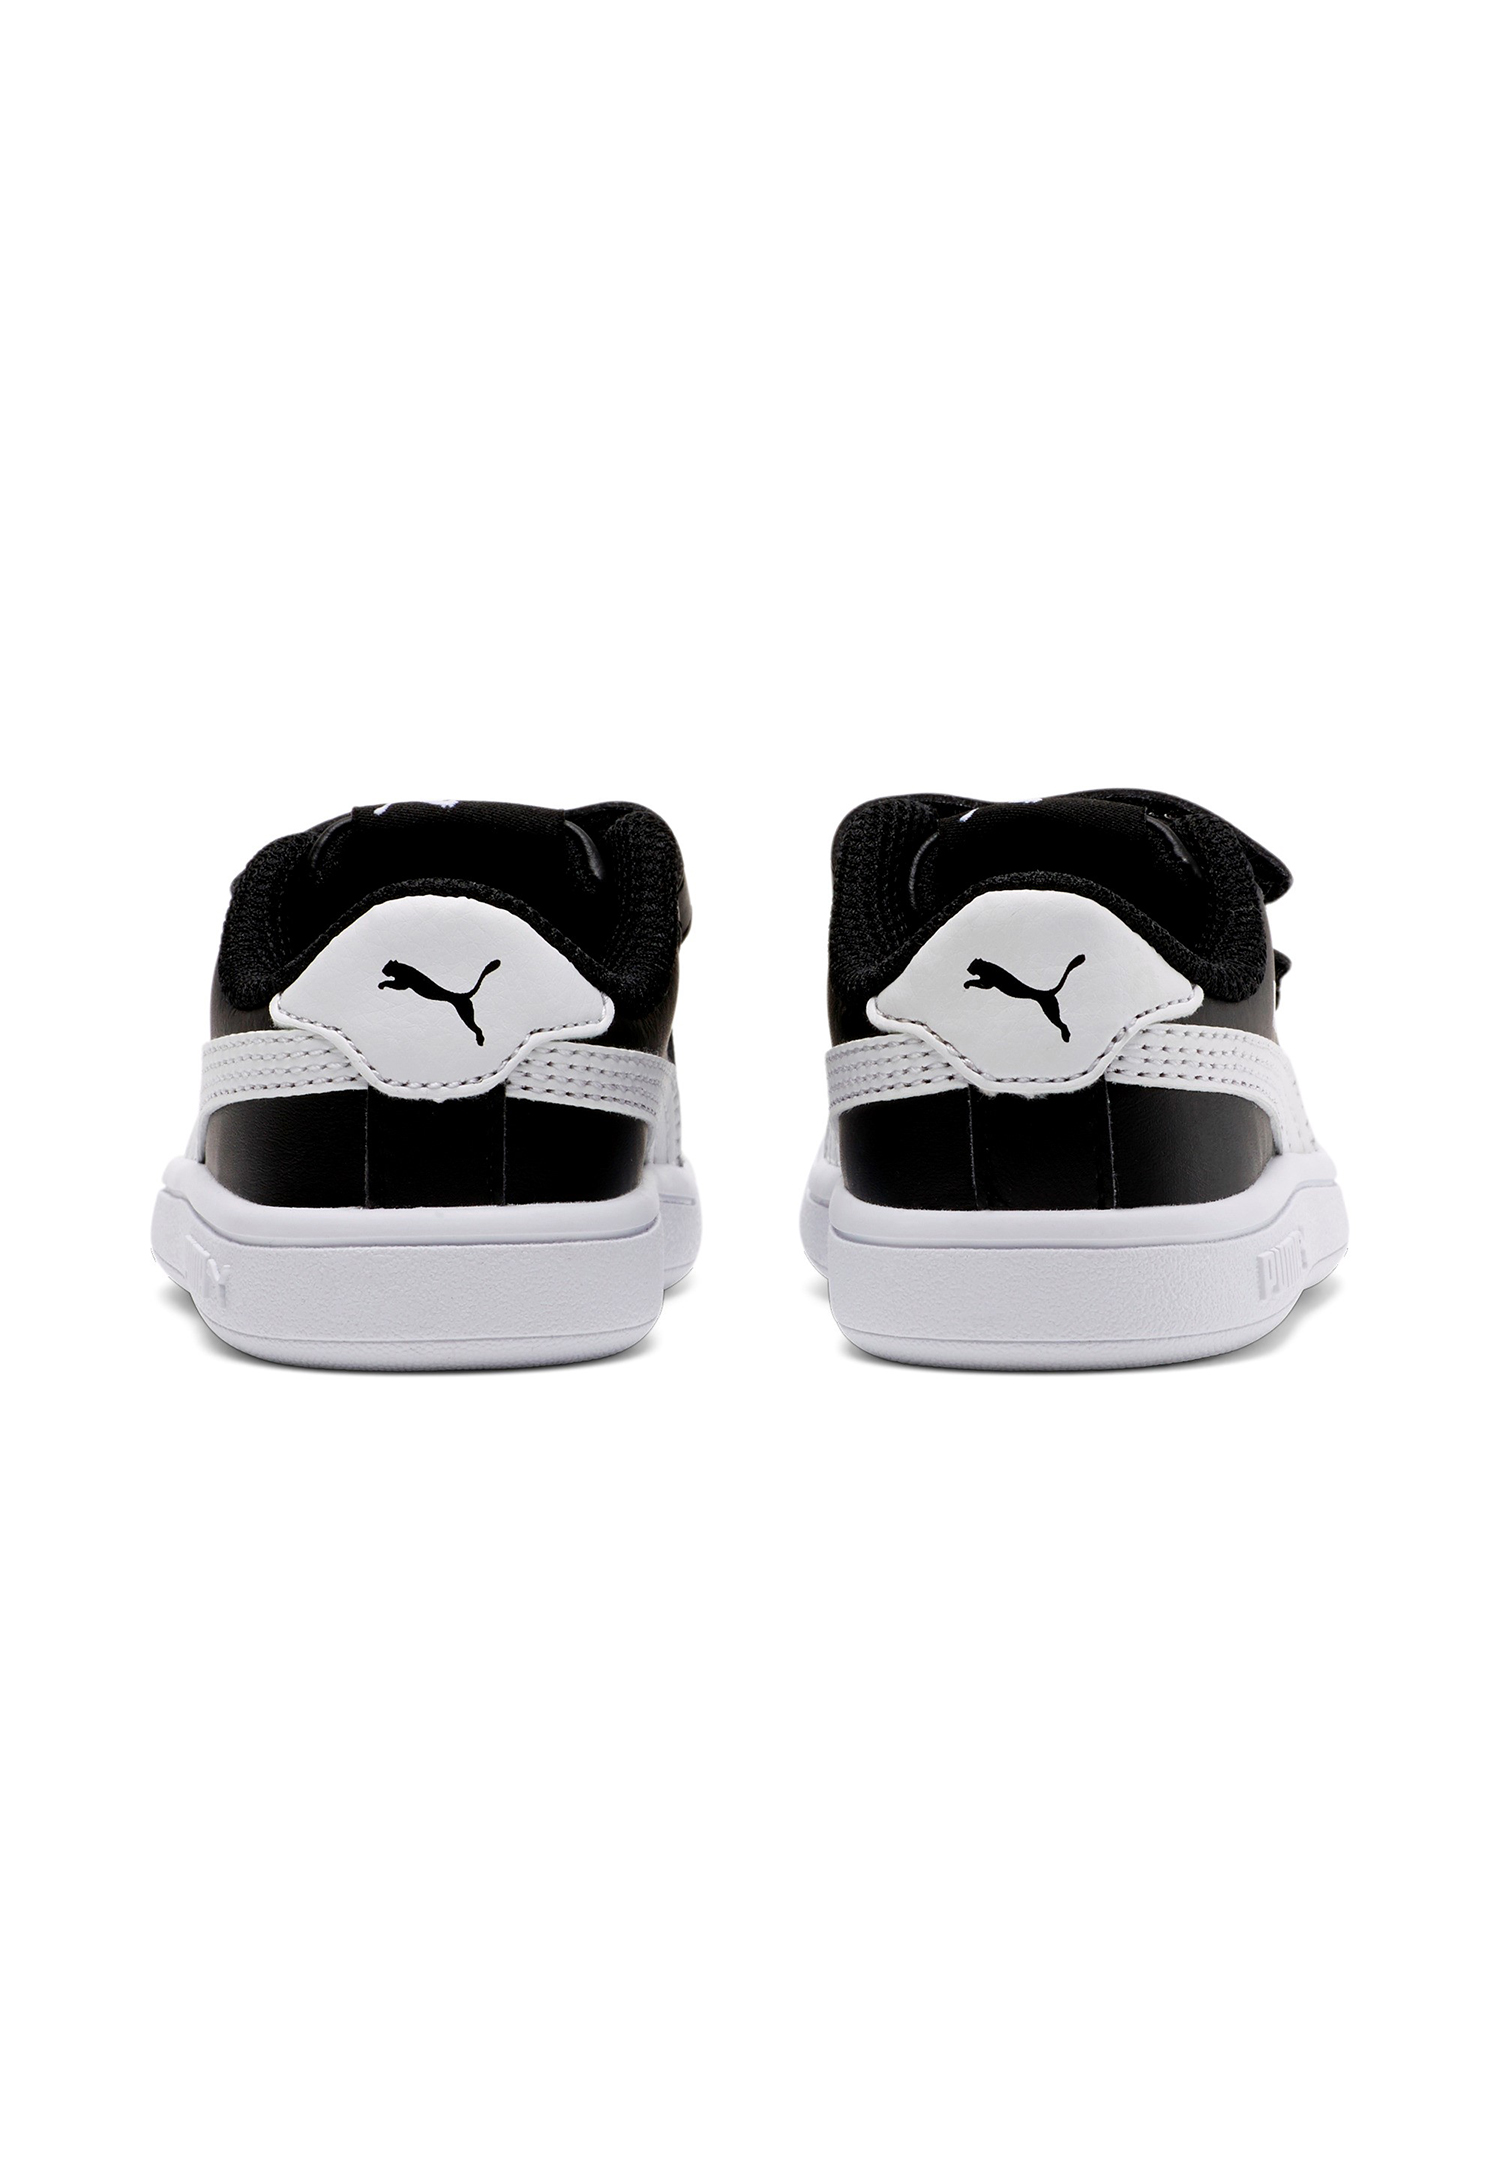 PUMA Smash v2 L V INF Kids Sneaker Schuhe schwarz 365174 03